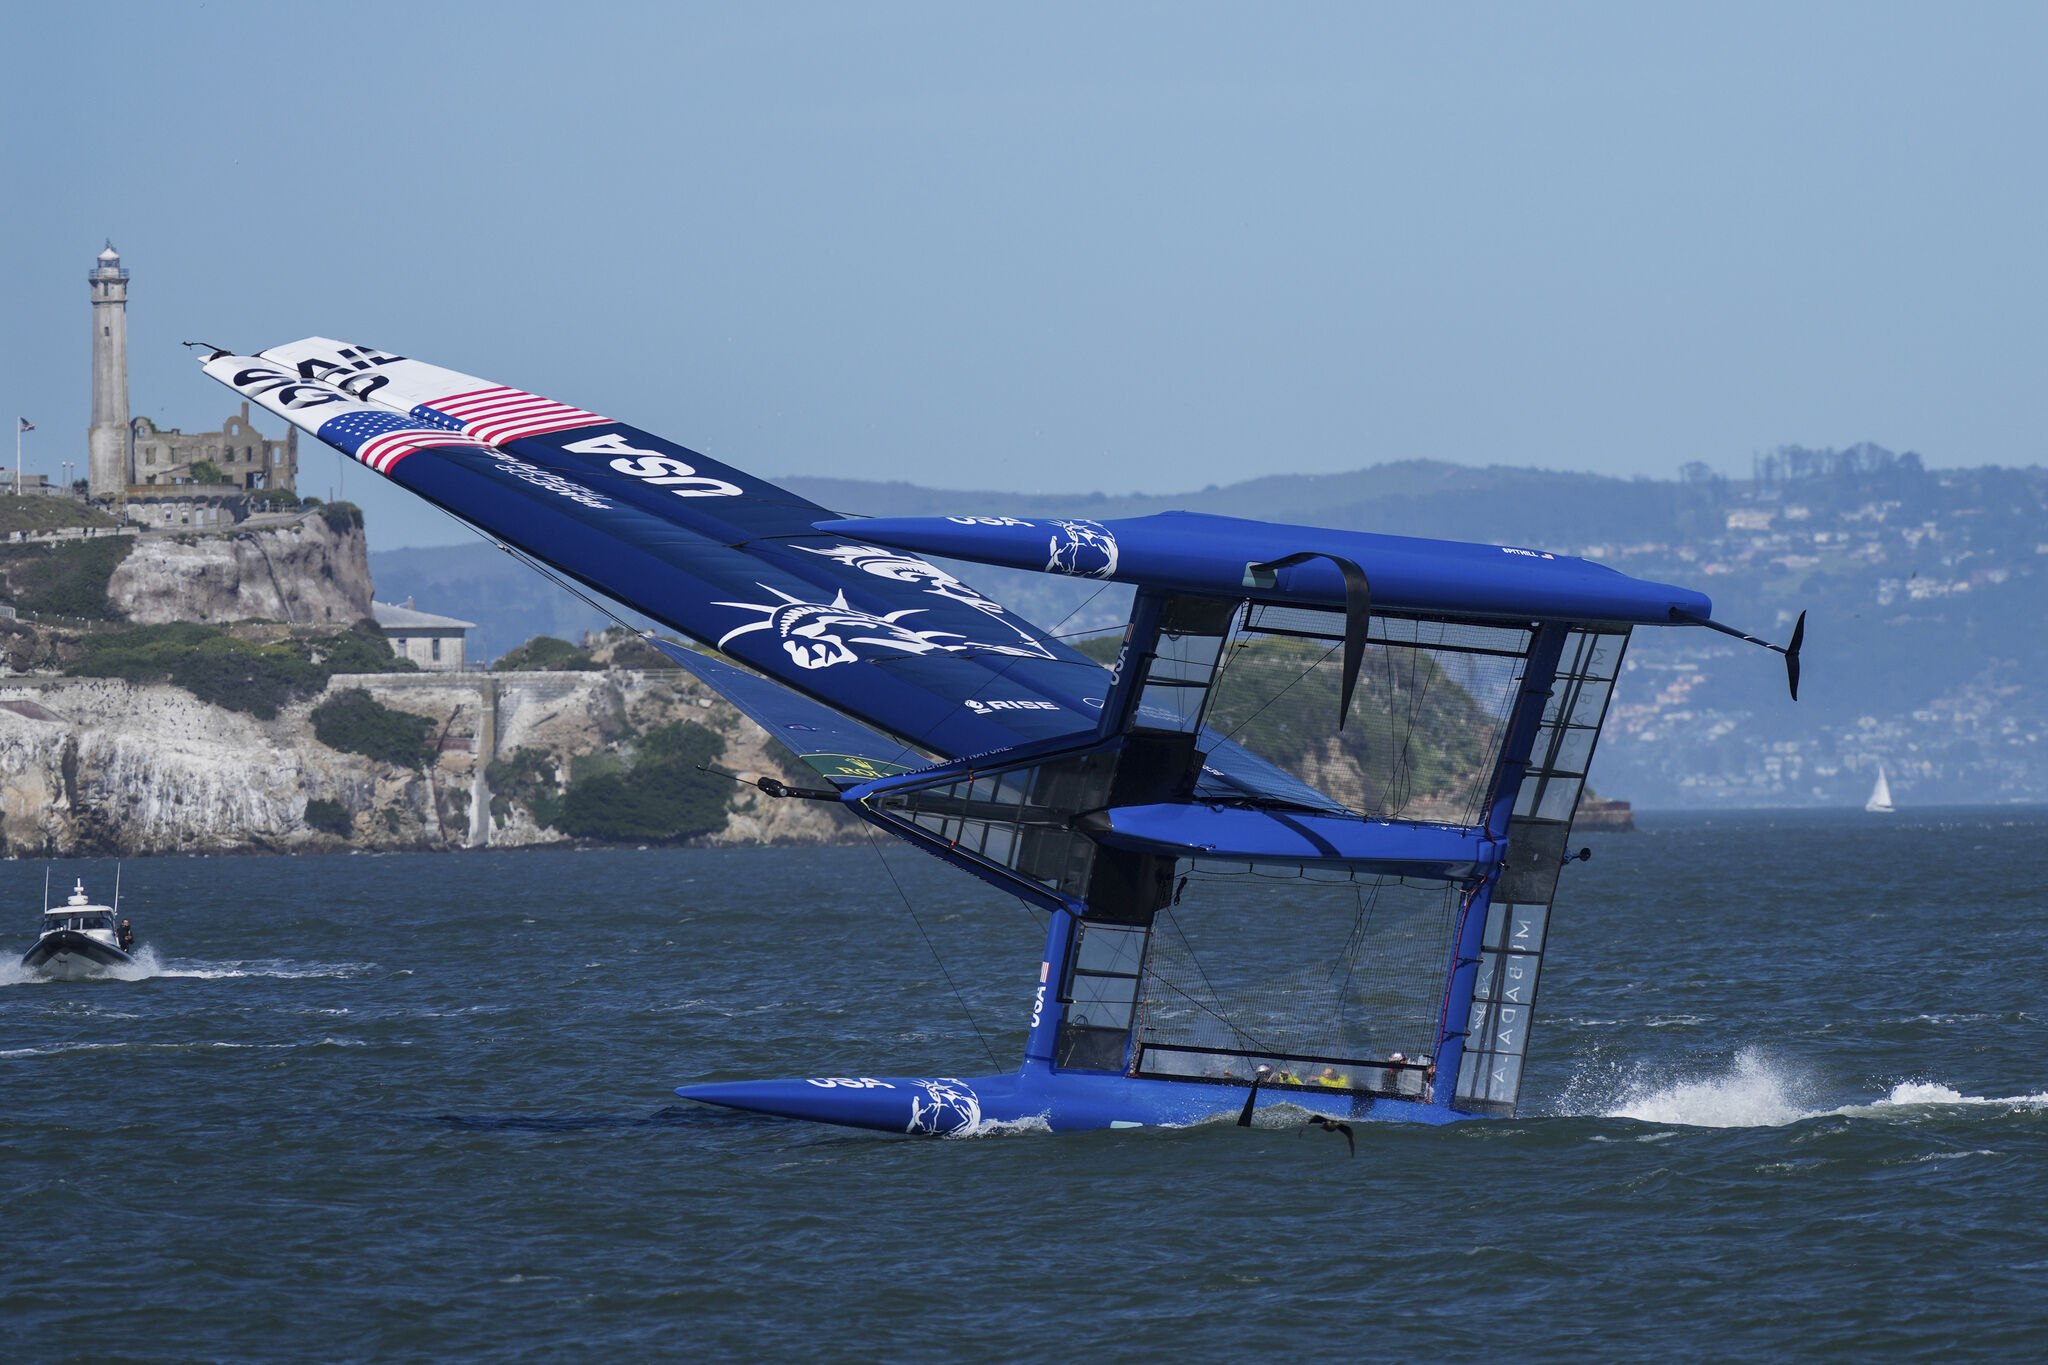 El catamarán de Jimmy Spithill, ganador de la Copa América en 2013 precisamente en San Francisco, a punto de volcar.